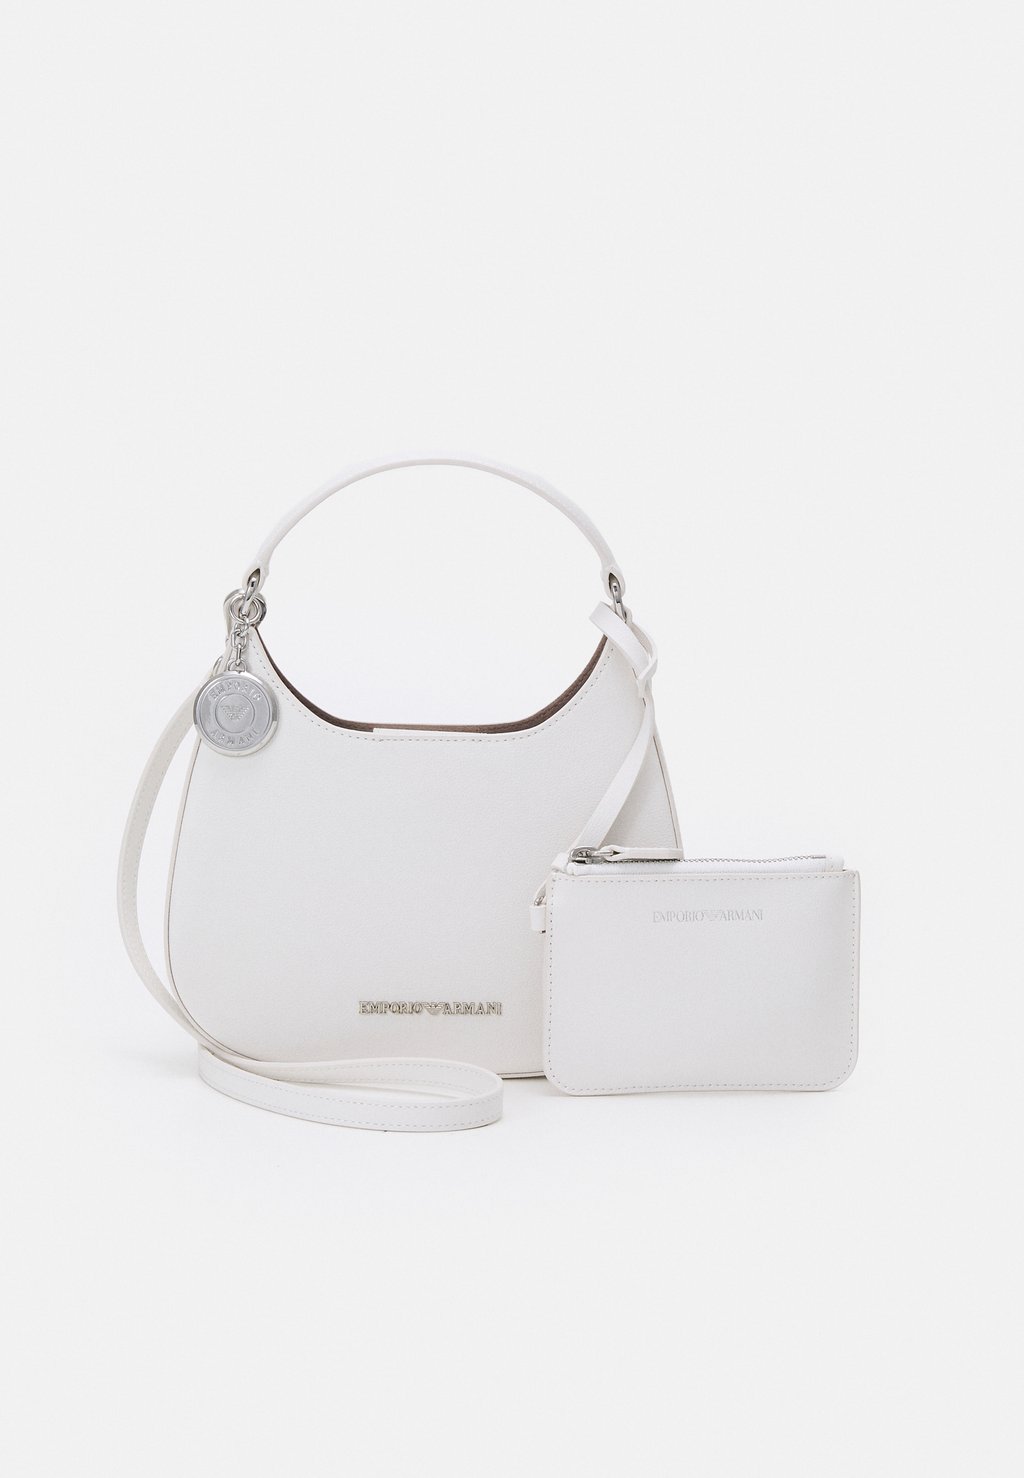 Ручная сумка Minibag Emporio Armani, белый